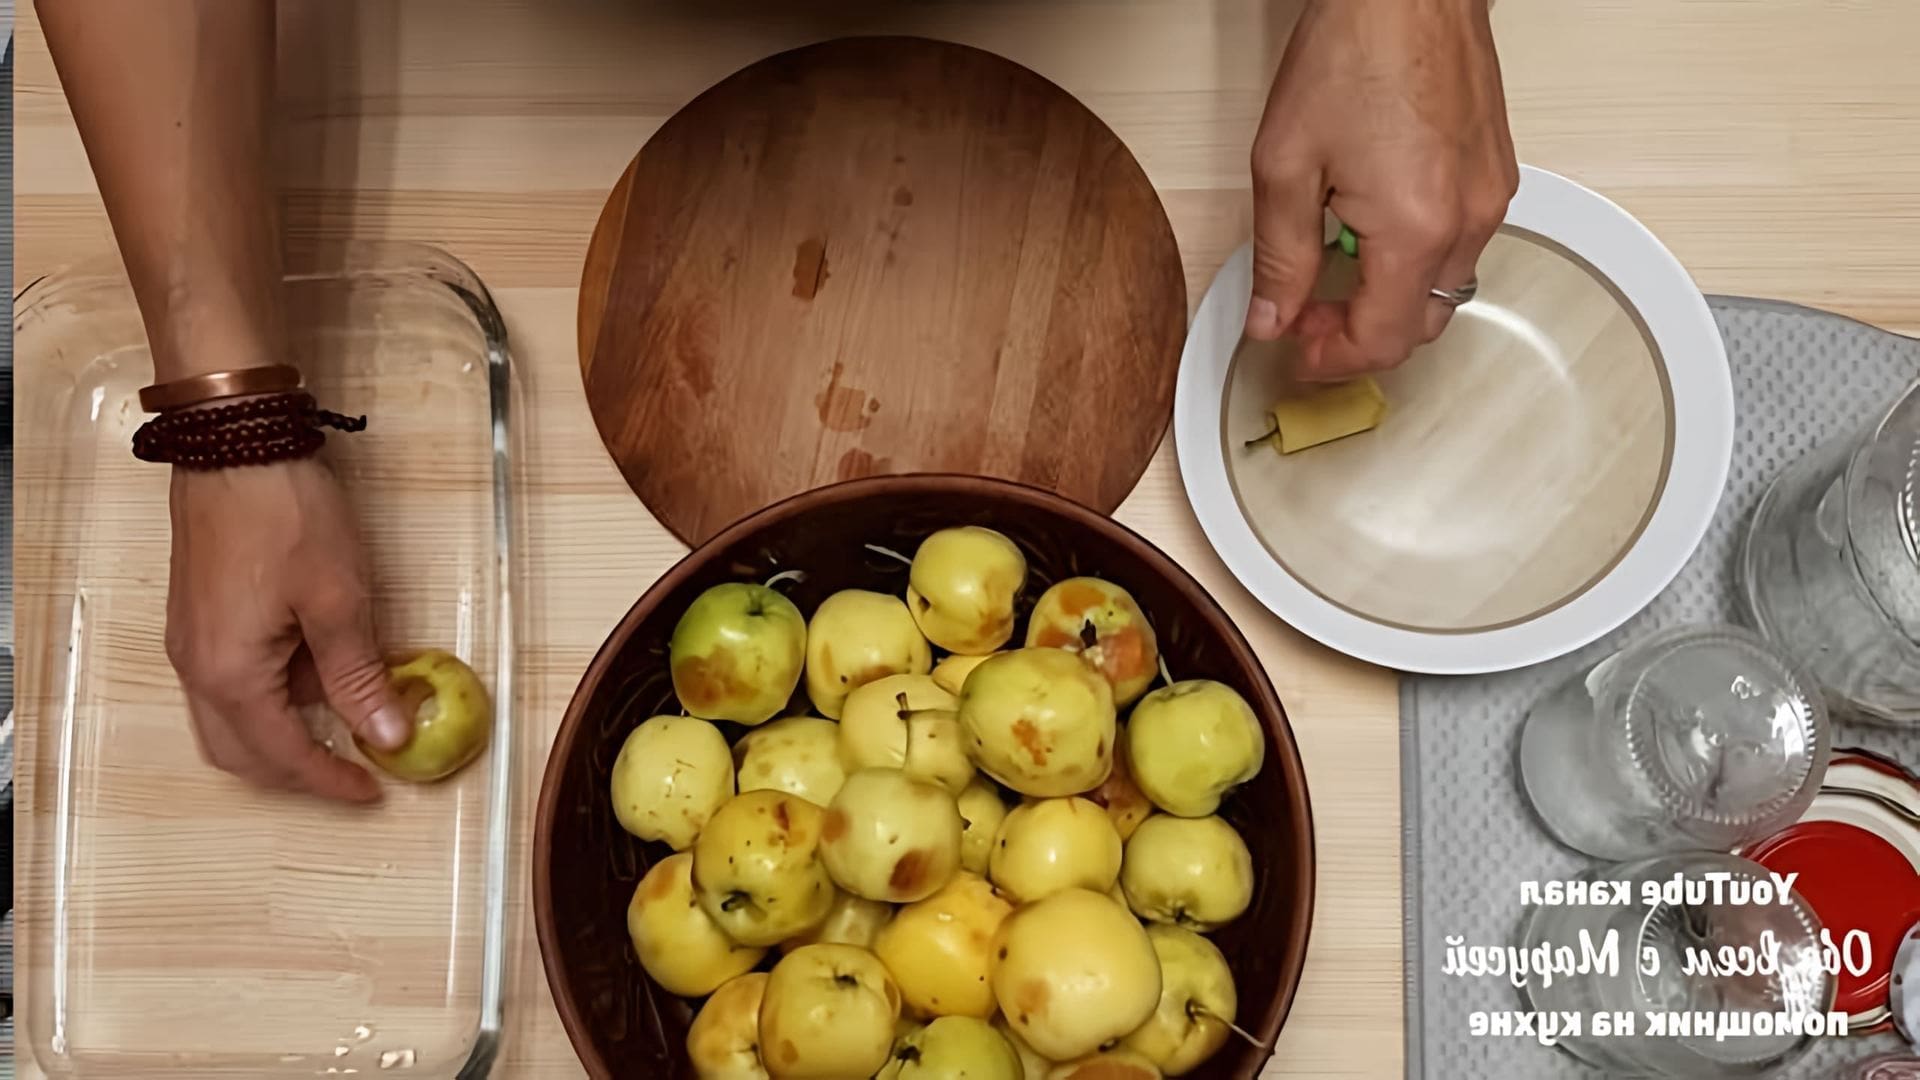 В этом видео демонстрируется рецепт приготовления яблочного пюре "Неженка"